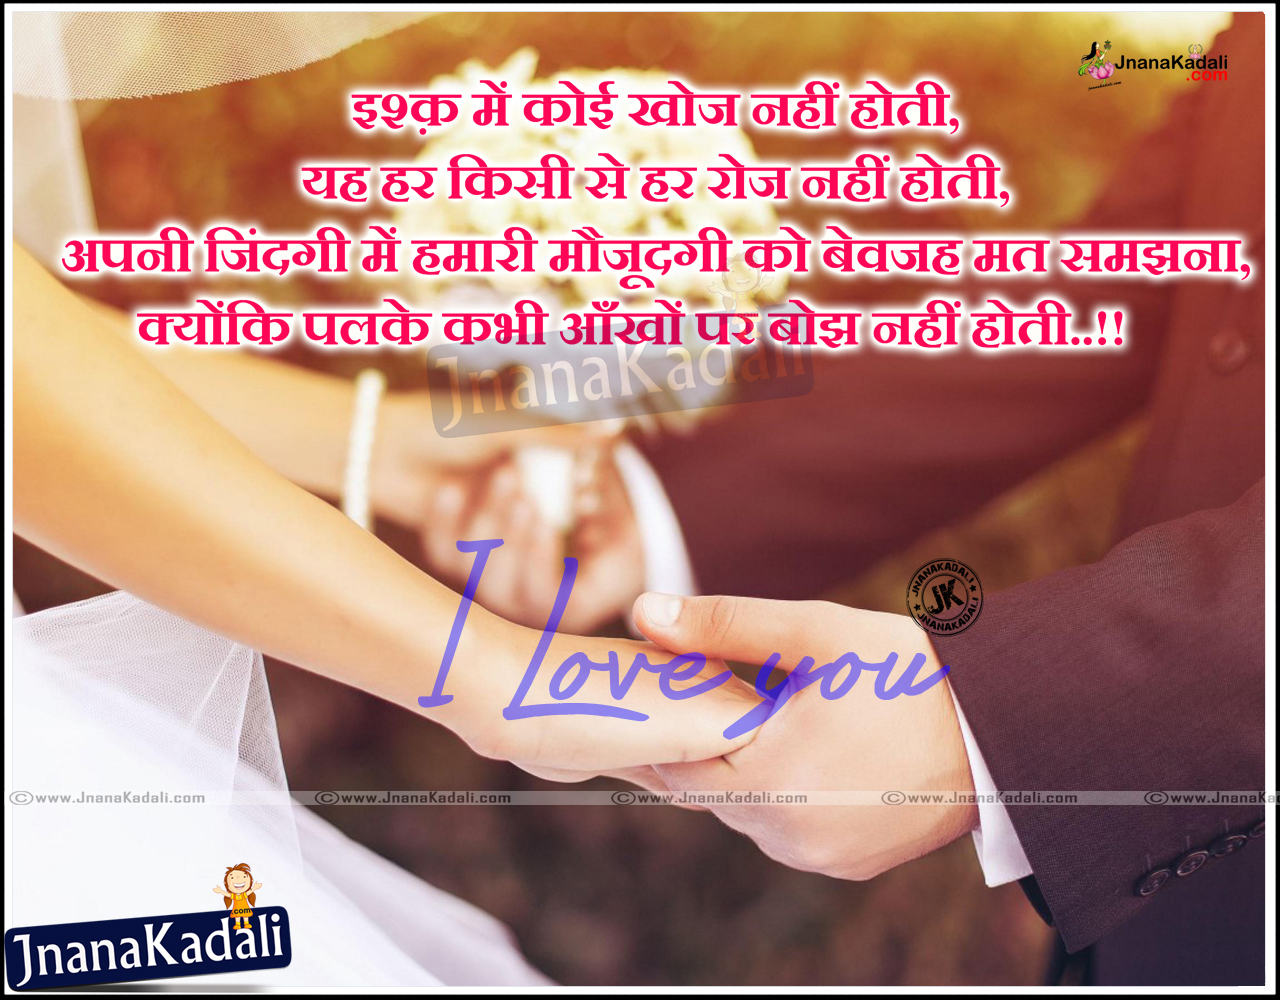 Best Love shayari in hindi Best hindi love quotes Love quotes in hindi pyar shayari in hindi HINDI LOVE QUOTES heart touching love quotes in hindi